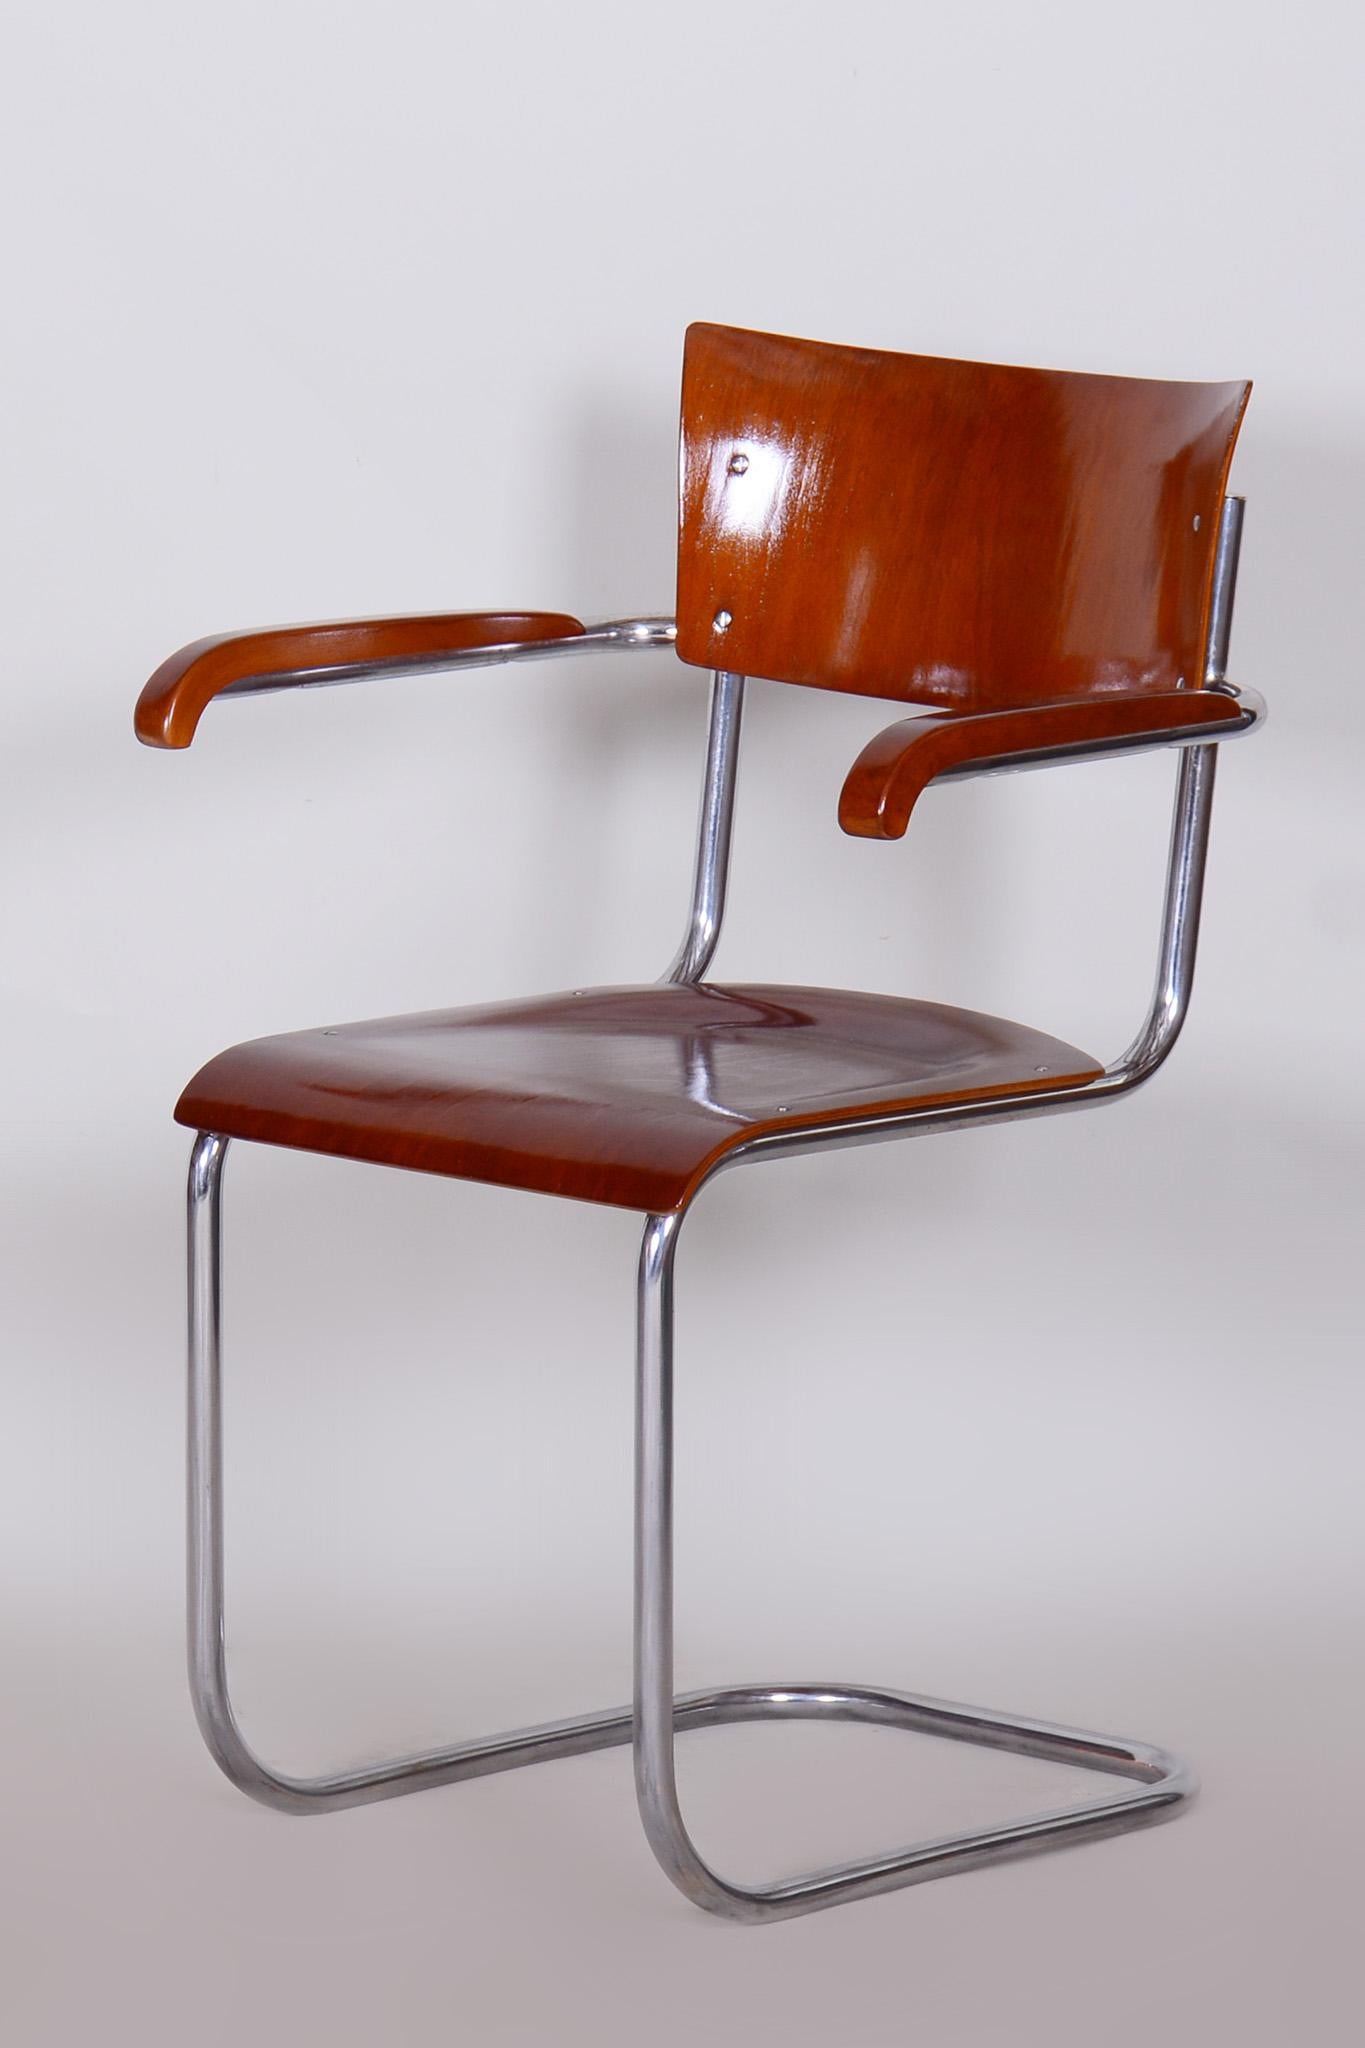 Ensemble de 4 fauteuils Bauhaus en contreplaqué de hêtre restaurés par Mart Stam.

Style : Bauhaus
Période : 1930-1939.
Matériau : Contreplaqué de hêtre et acier chromé
Source : Allemagne 
Créateur : Mart Stam
Hauteur de l'assise : 45 cm / 17.72″.